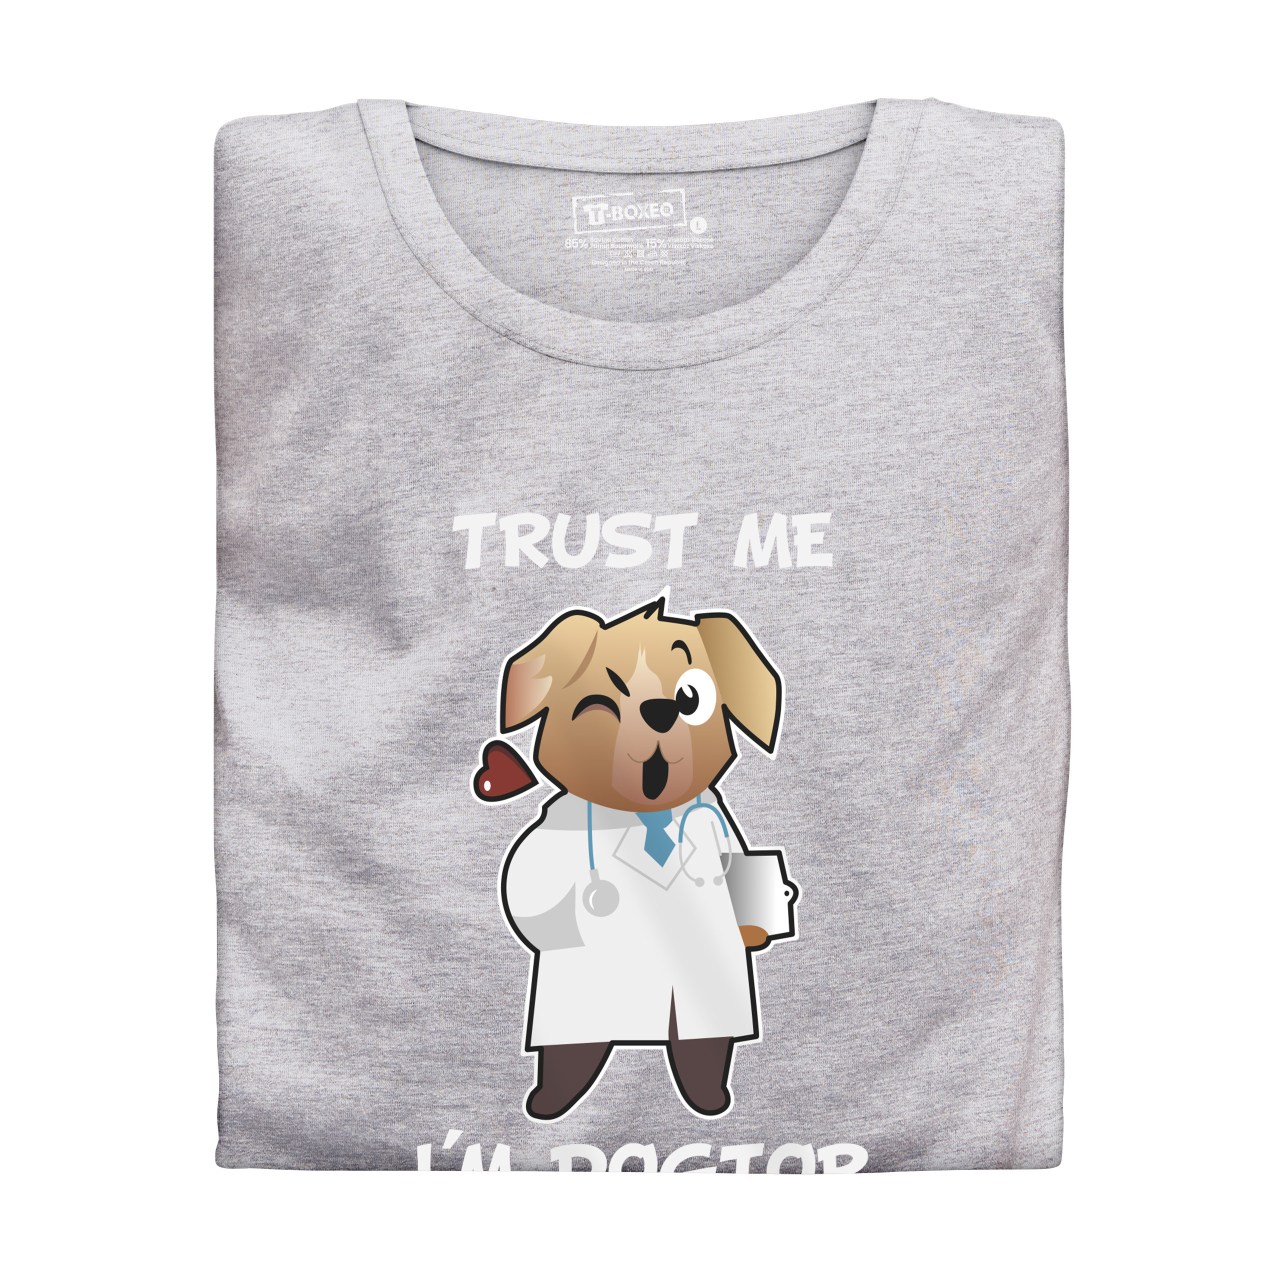 Dámské tričko s potiskem "Trust me I´m doctor"